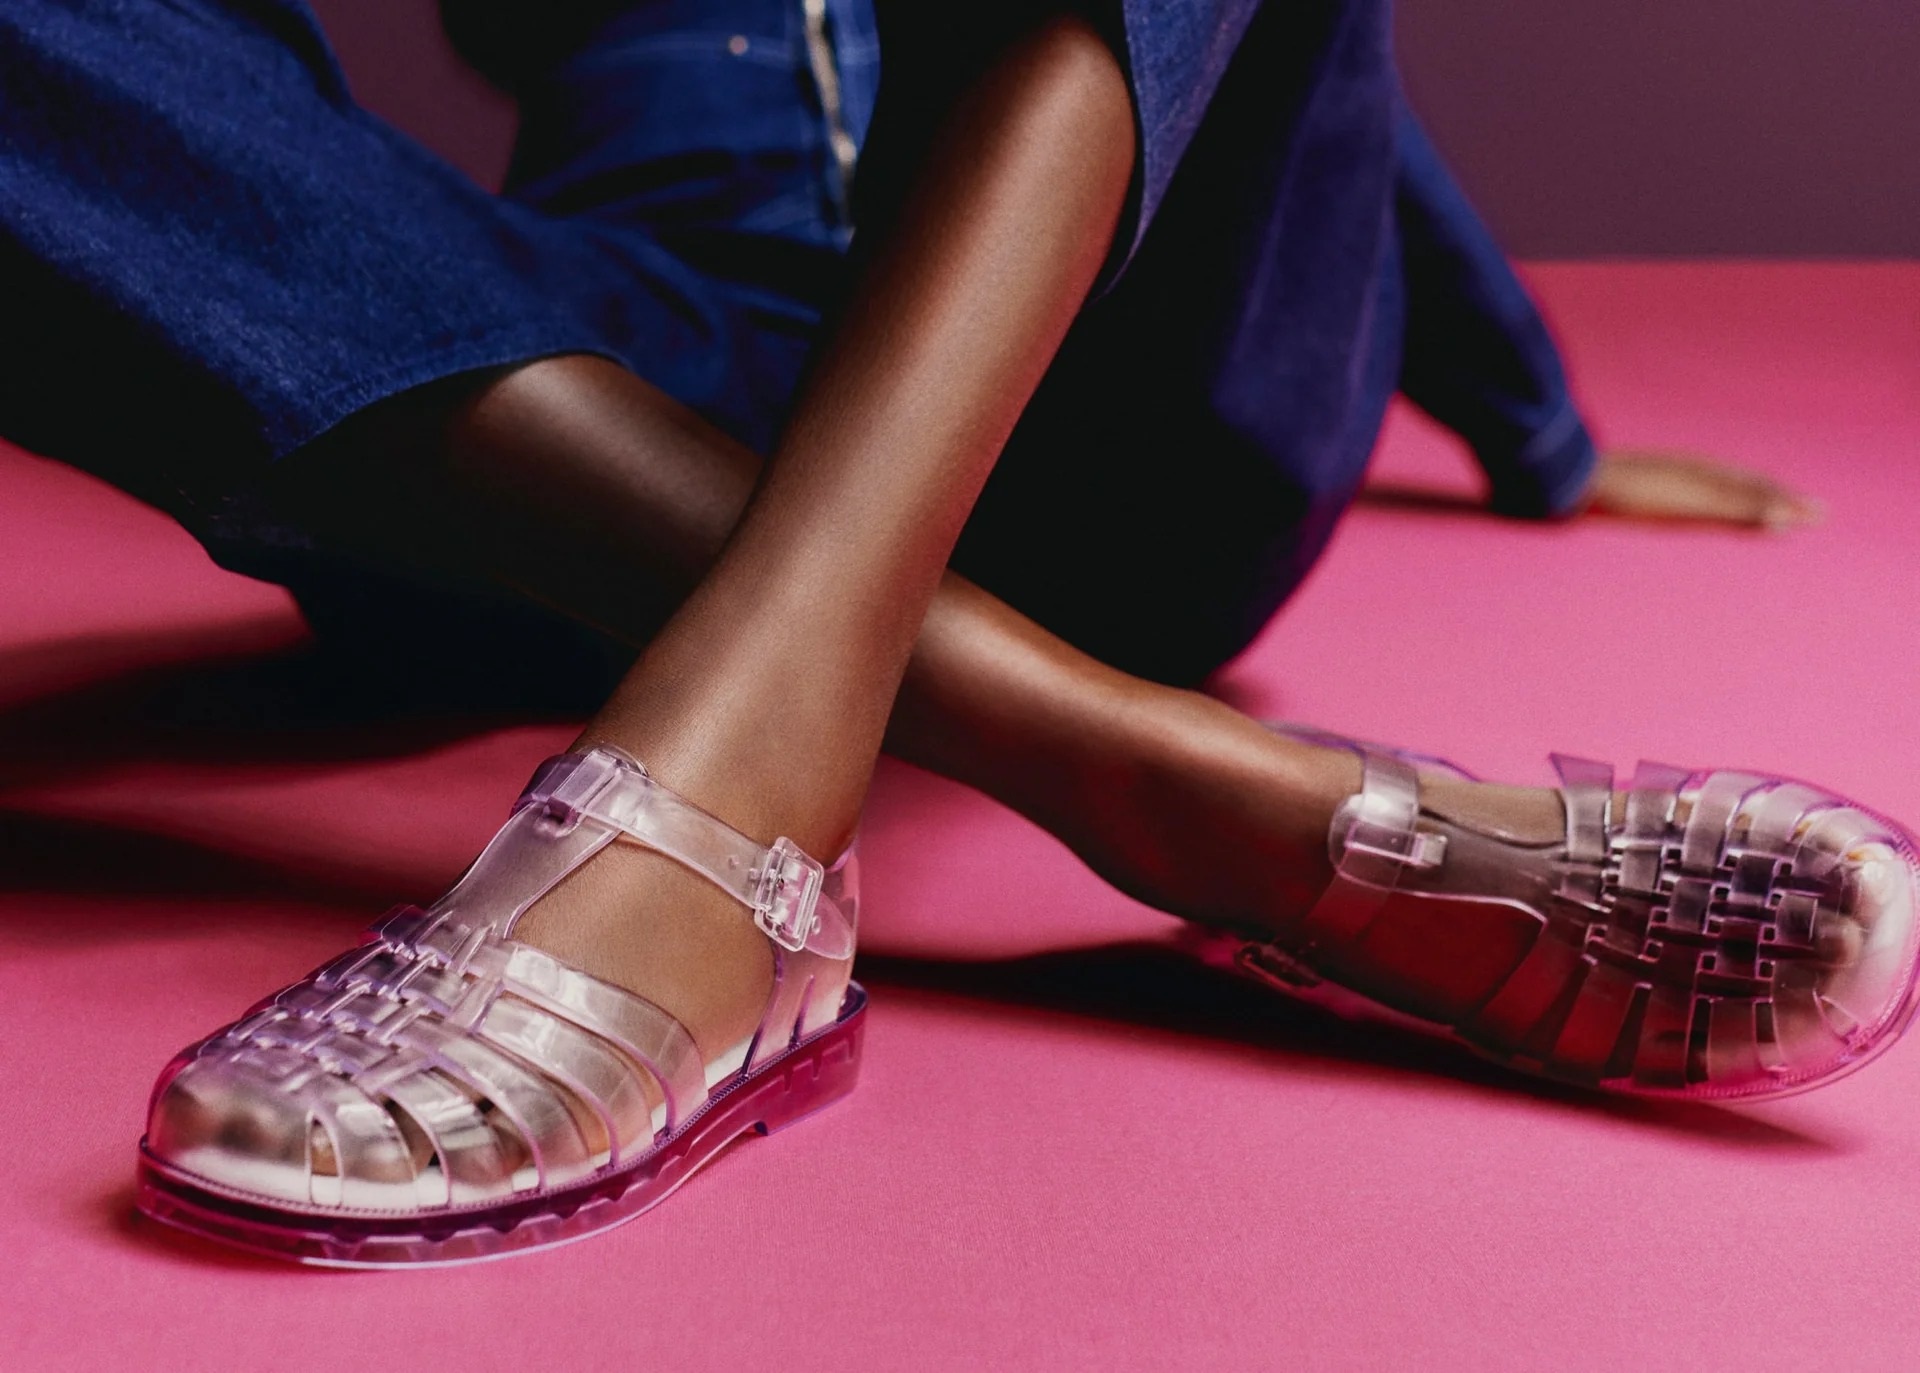 Sandals ngư dân làm từ nhựa dẻo phối màu tươi sáng giúp tô điểm cho đôi chân của phái đẹp thêm rực rỡ (Ảnh: Melissa Shoes).